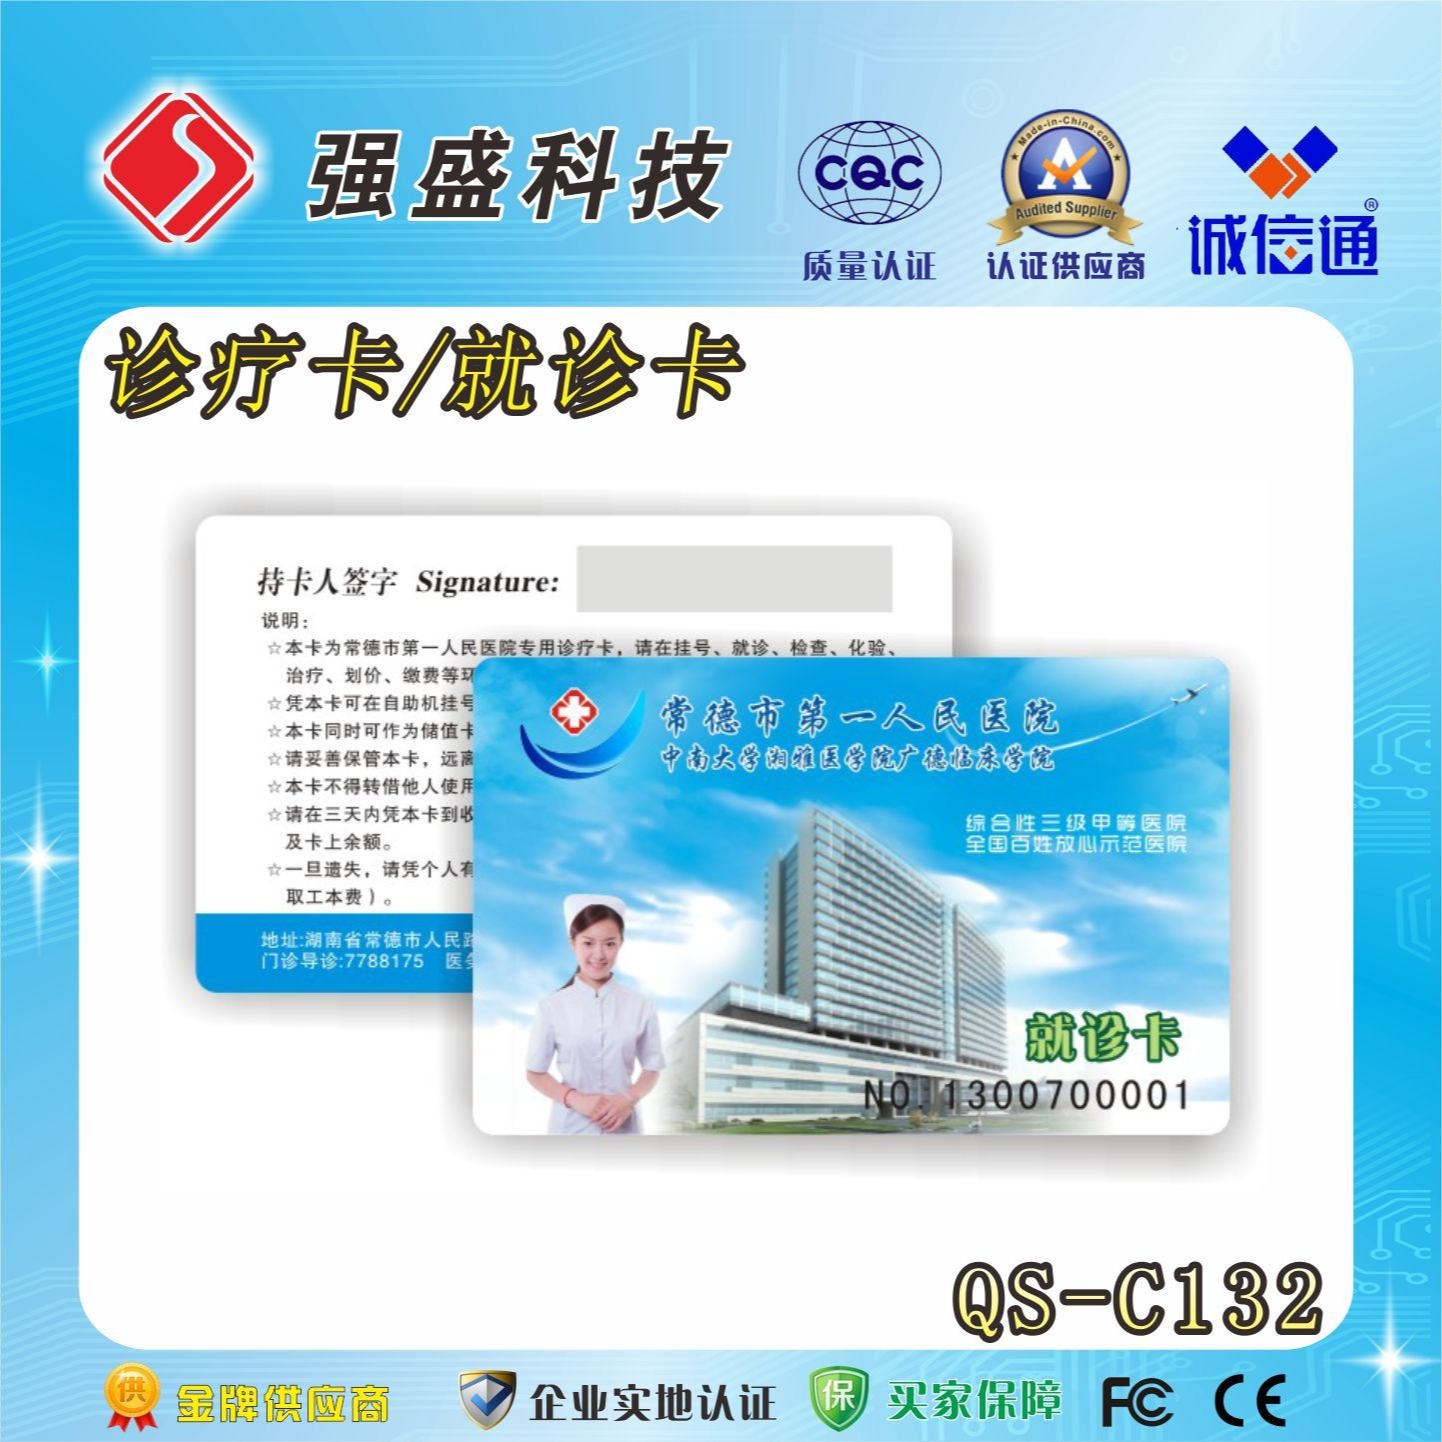 供应医院诊疗IC卡 QS-C132 医院就诊卡定制 IC卡厂家